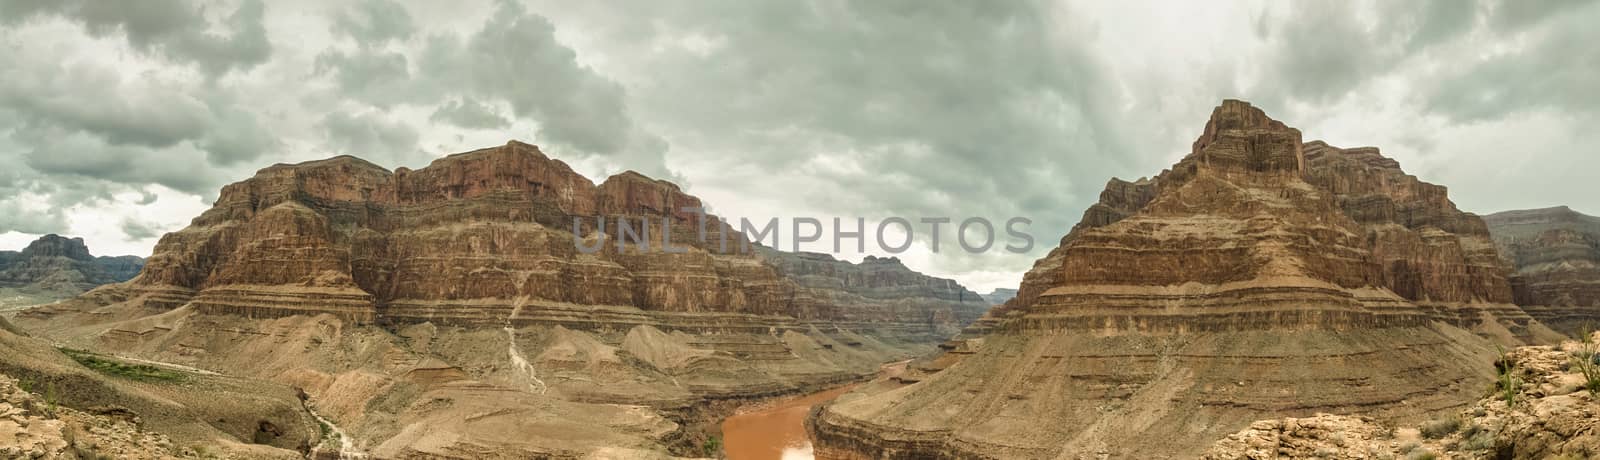 Grand Canyon Panorama USA, Nevada beautiful landscape